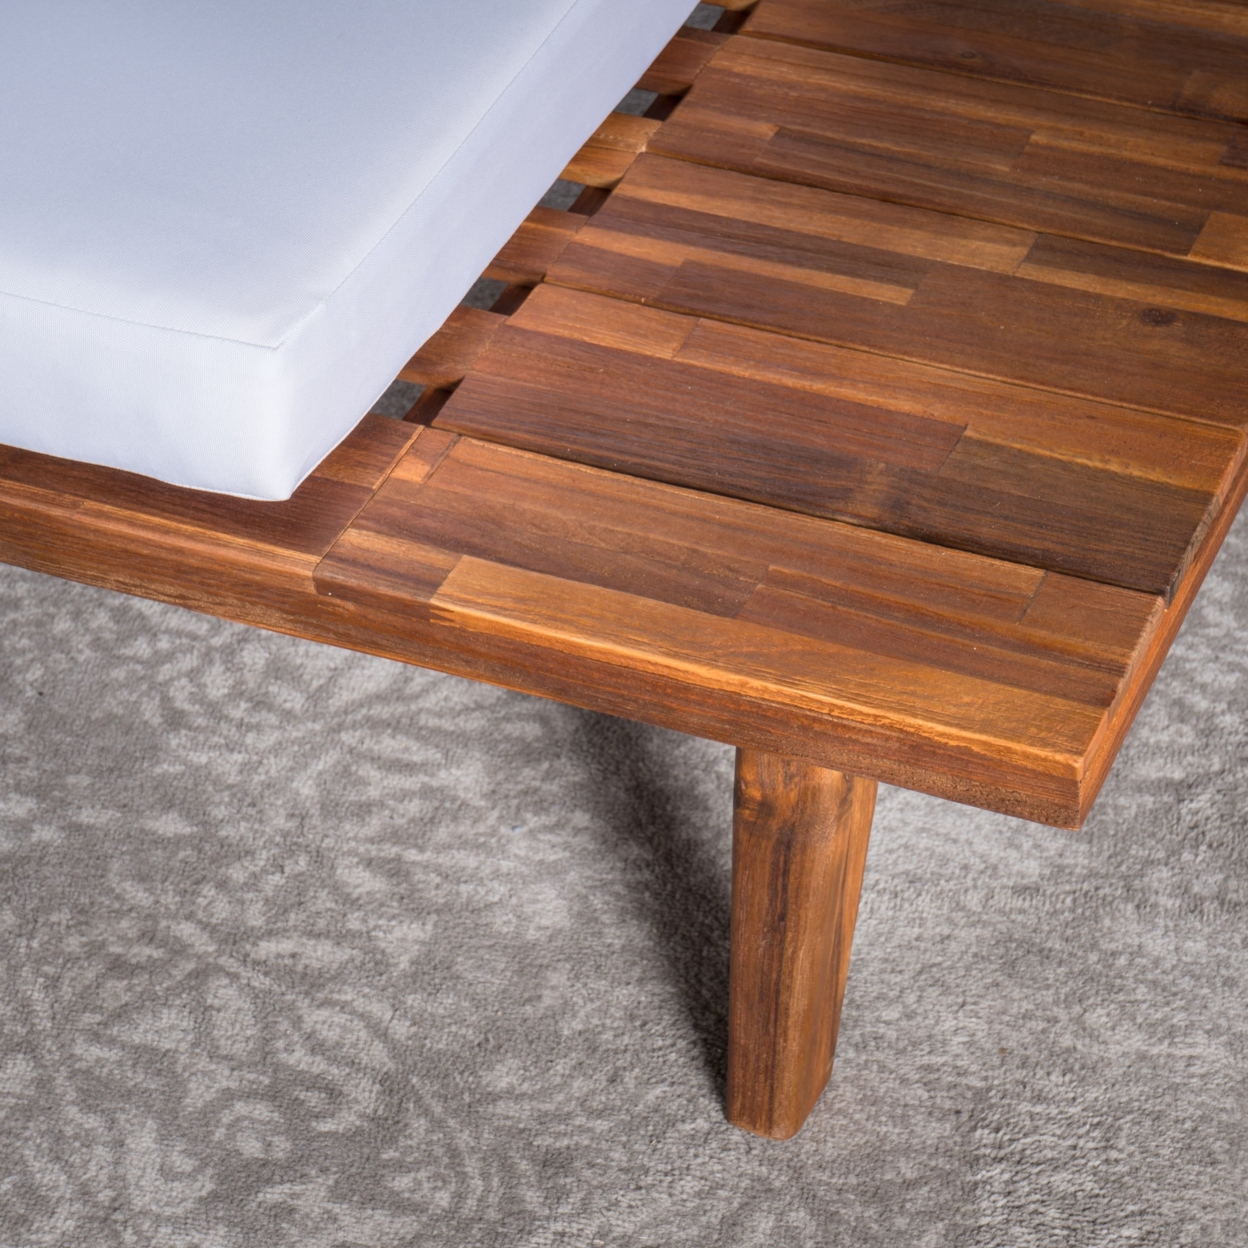 Ellison Indoor Minimalist V Shaped 4 Piece Sandblast Finished Acacia Wood Sectional Sofa Set With White Cushions